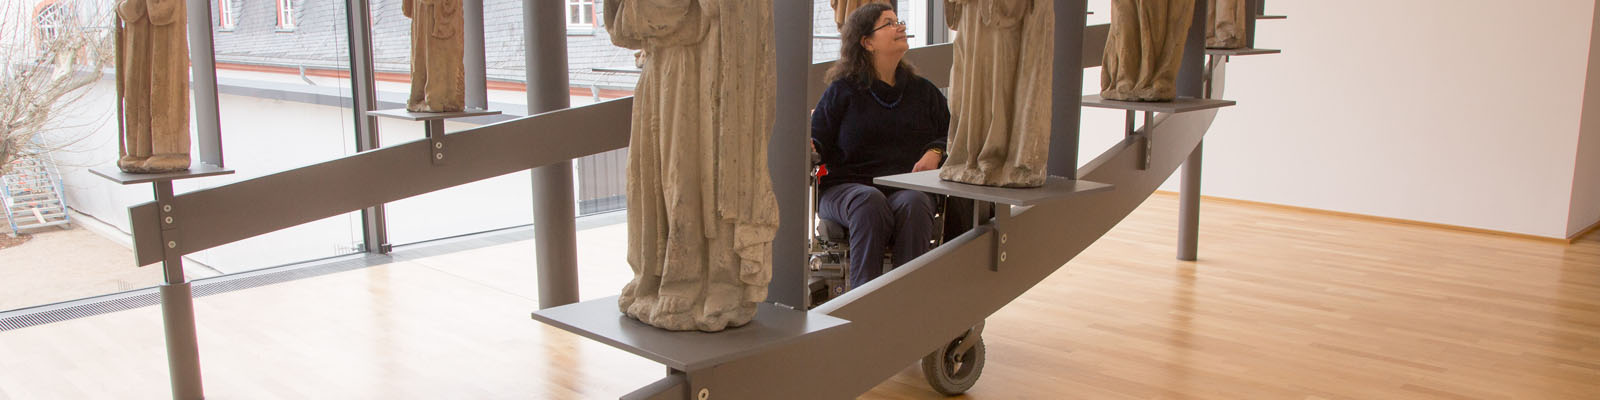 Frau im Rollstuhl besichtigt Ausstellungsstücke